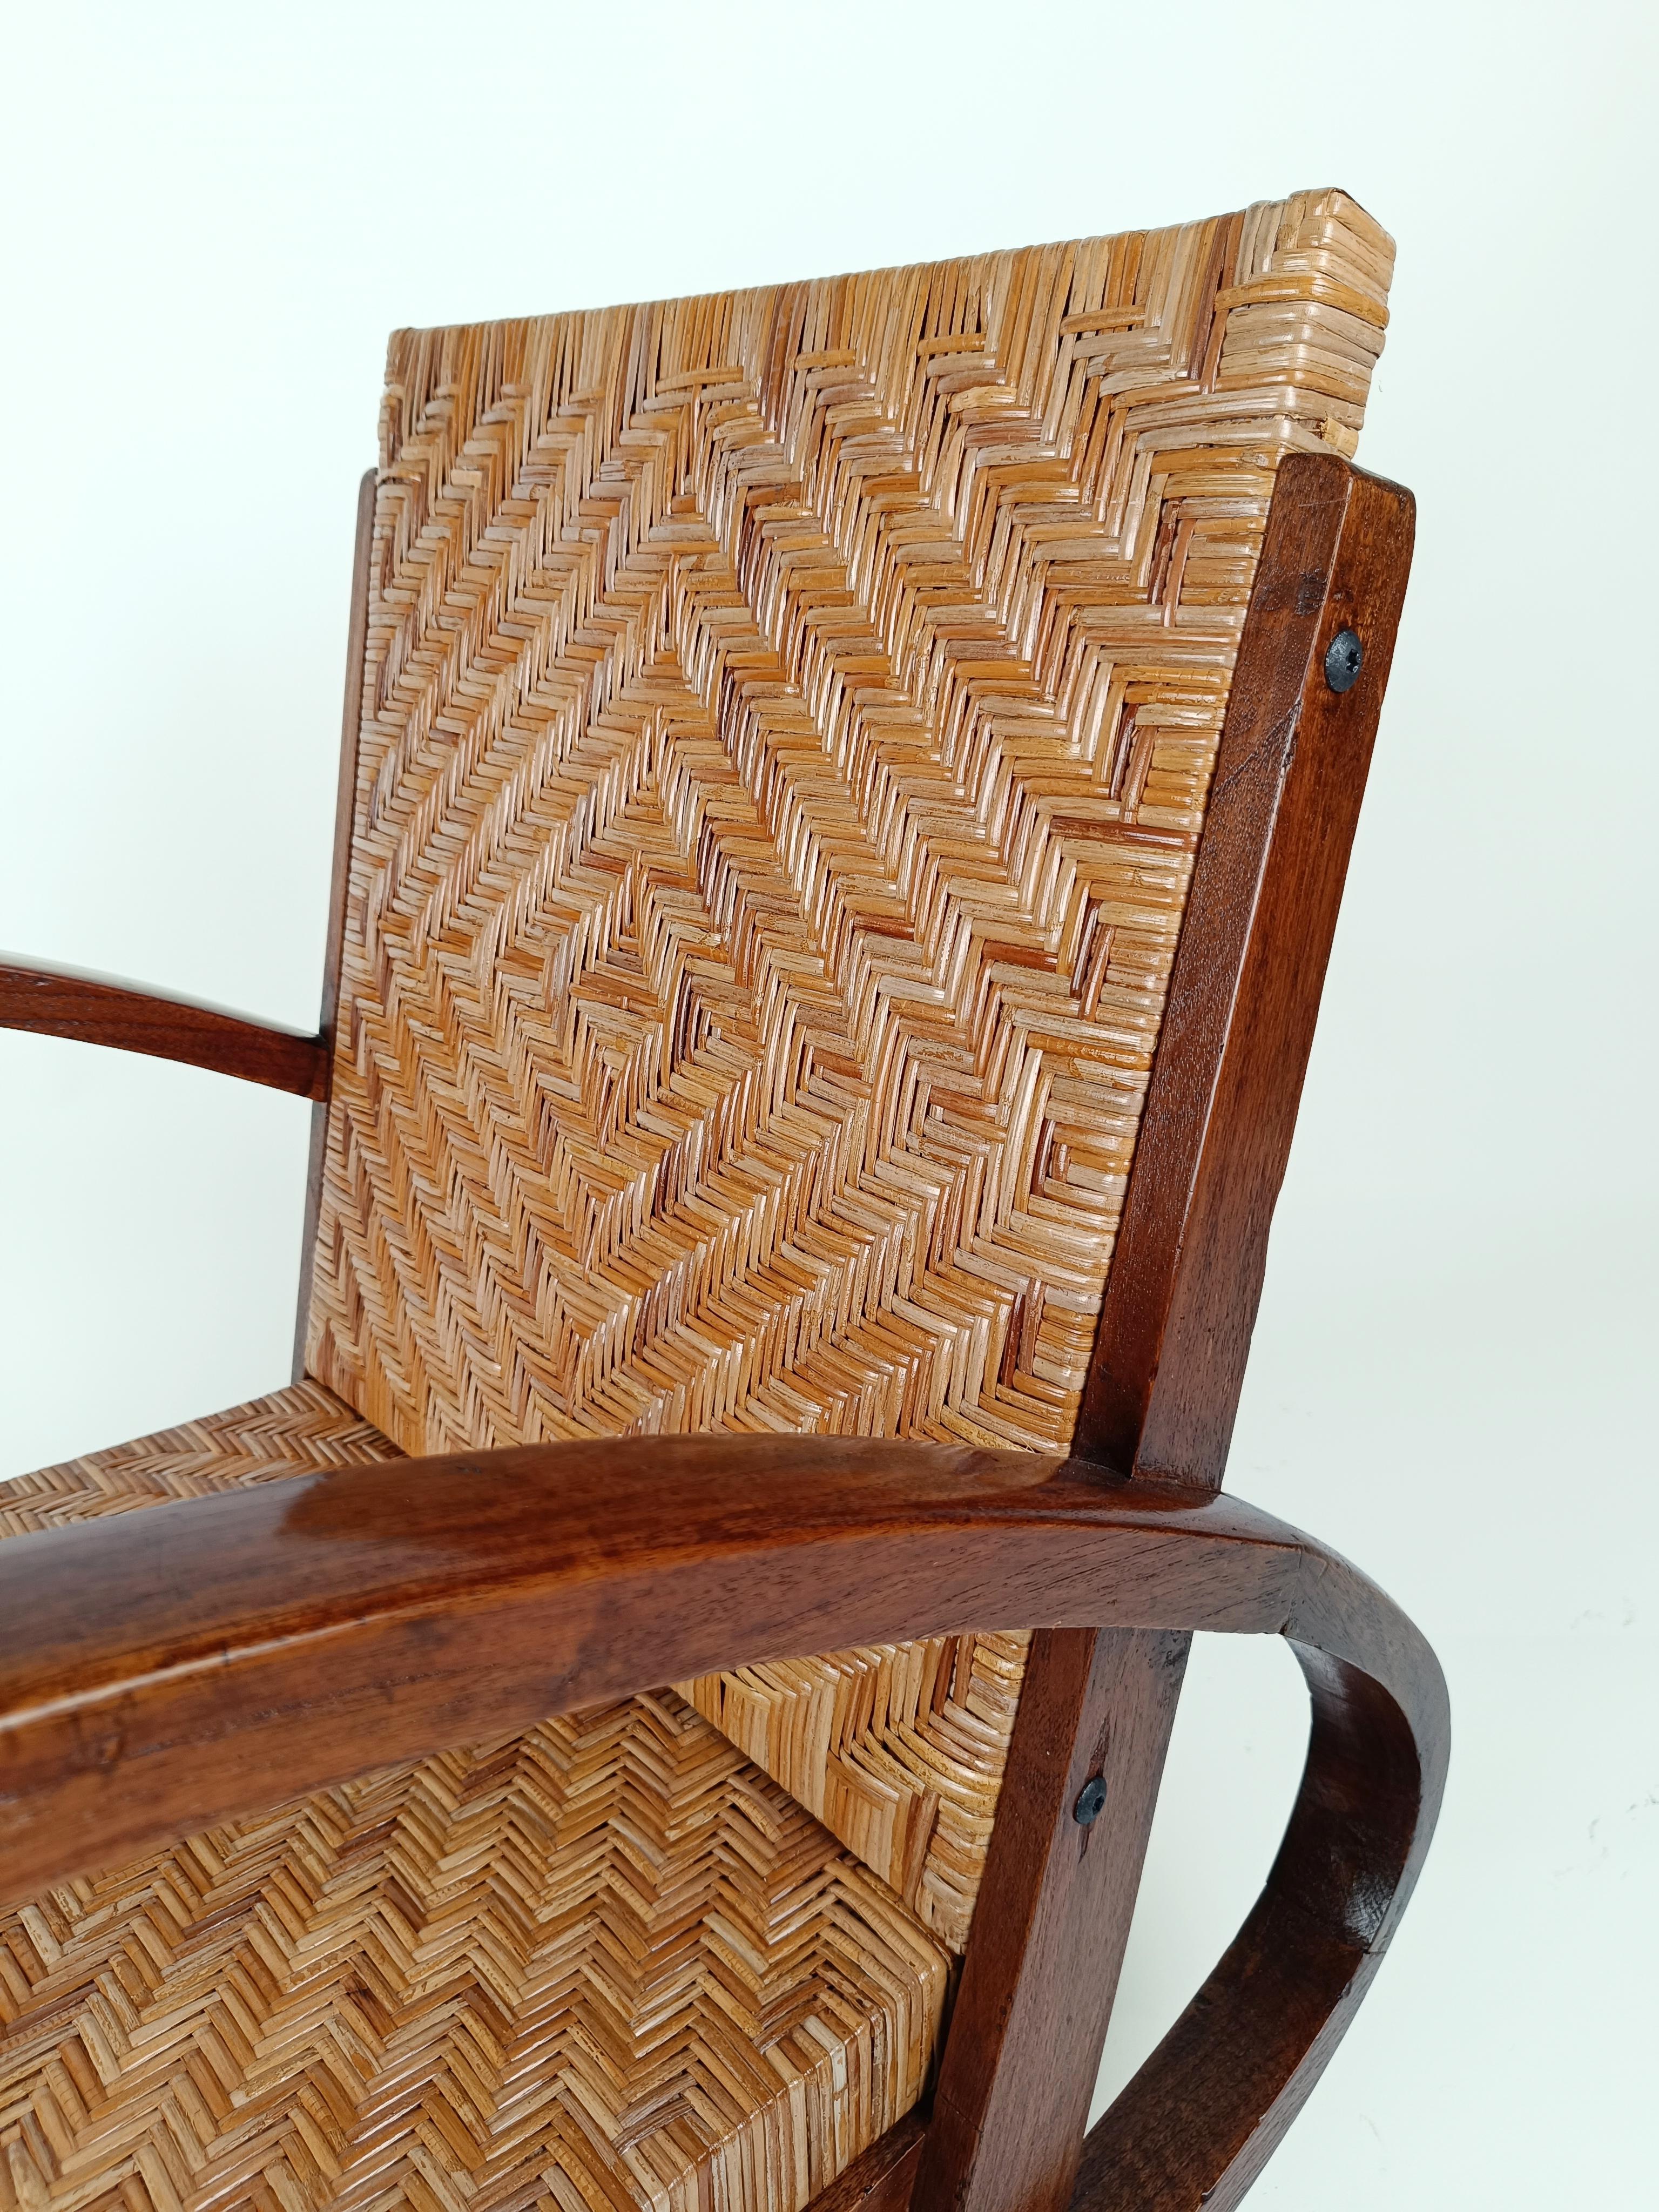 Ein Paar originale Art-Déco-Sessel, die wahrscheinlich in Italien zwischen den 1920er und 1930er Jahren von erstaunlichen Handwerkern hergestellt wurden.
Dieses Set besteht aus 2 Mid Century Sesseln aus massivem Hartholz mit Rohrsitzen.
Die